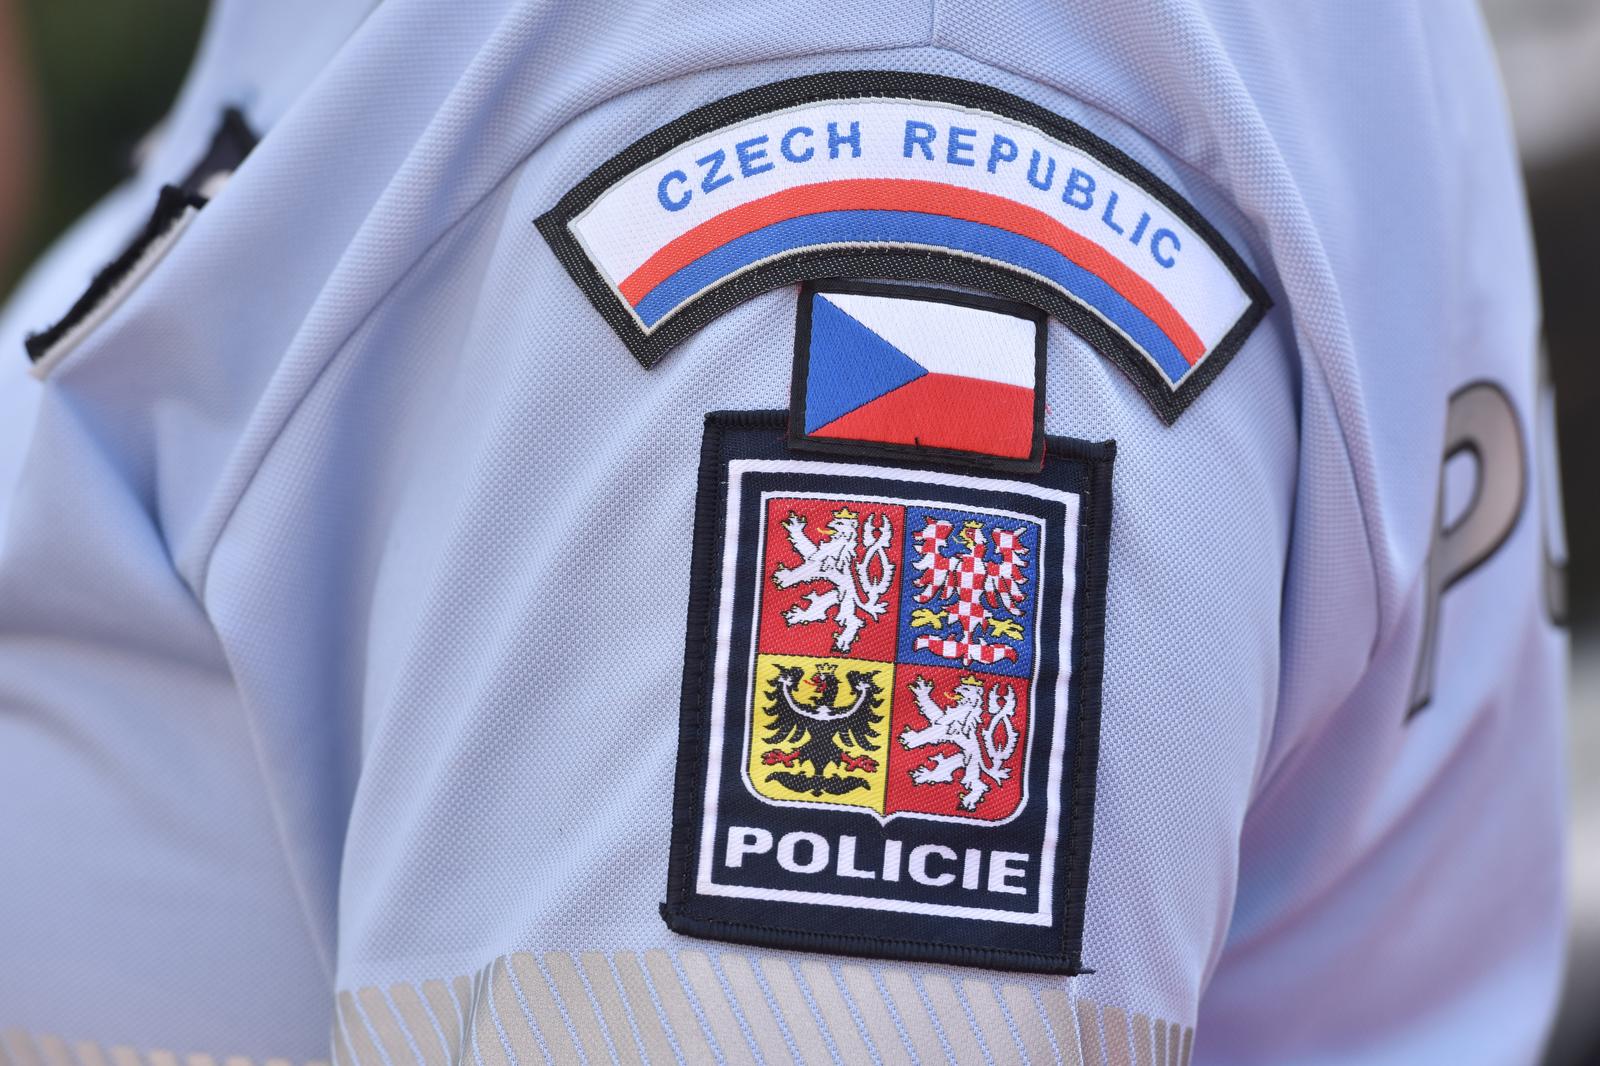 12.07.2018., Primosten - Oznaka policije Ceske republike"n"nPhoto: Hrvoje Jelavic/PIXSELL